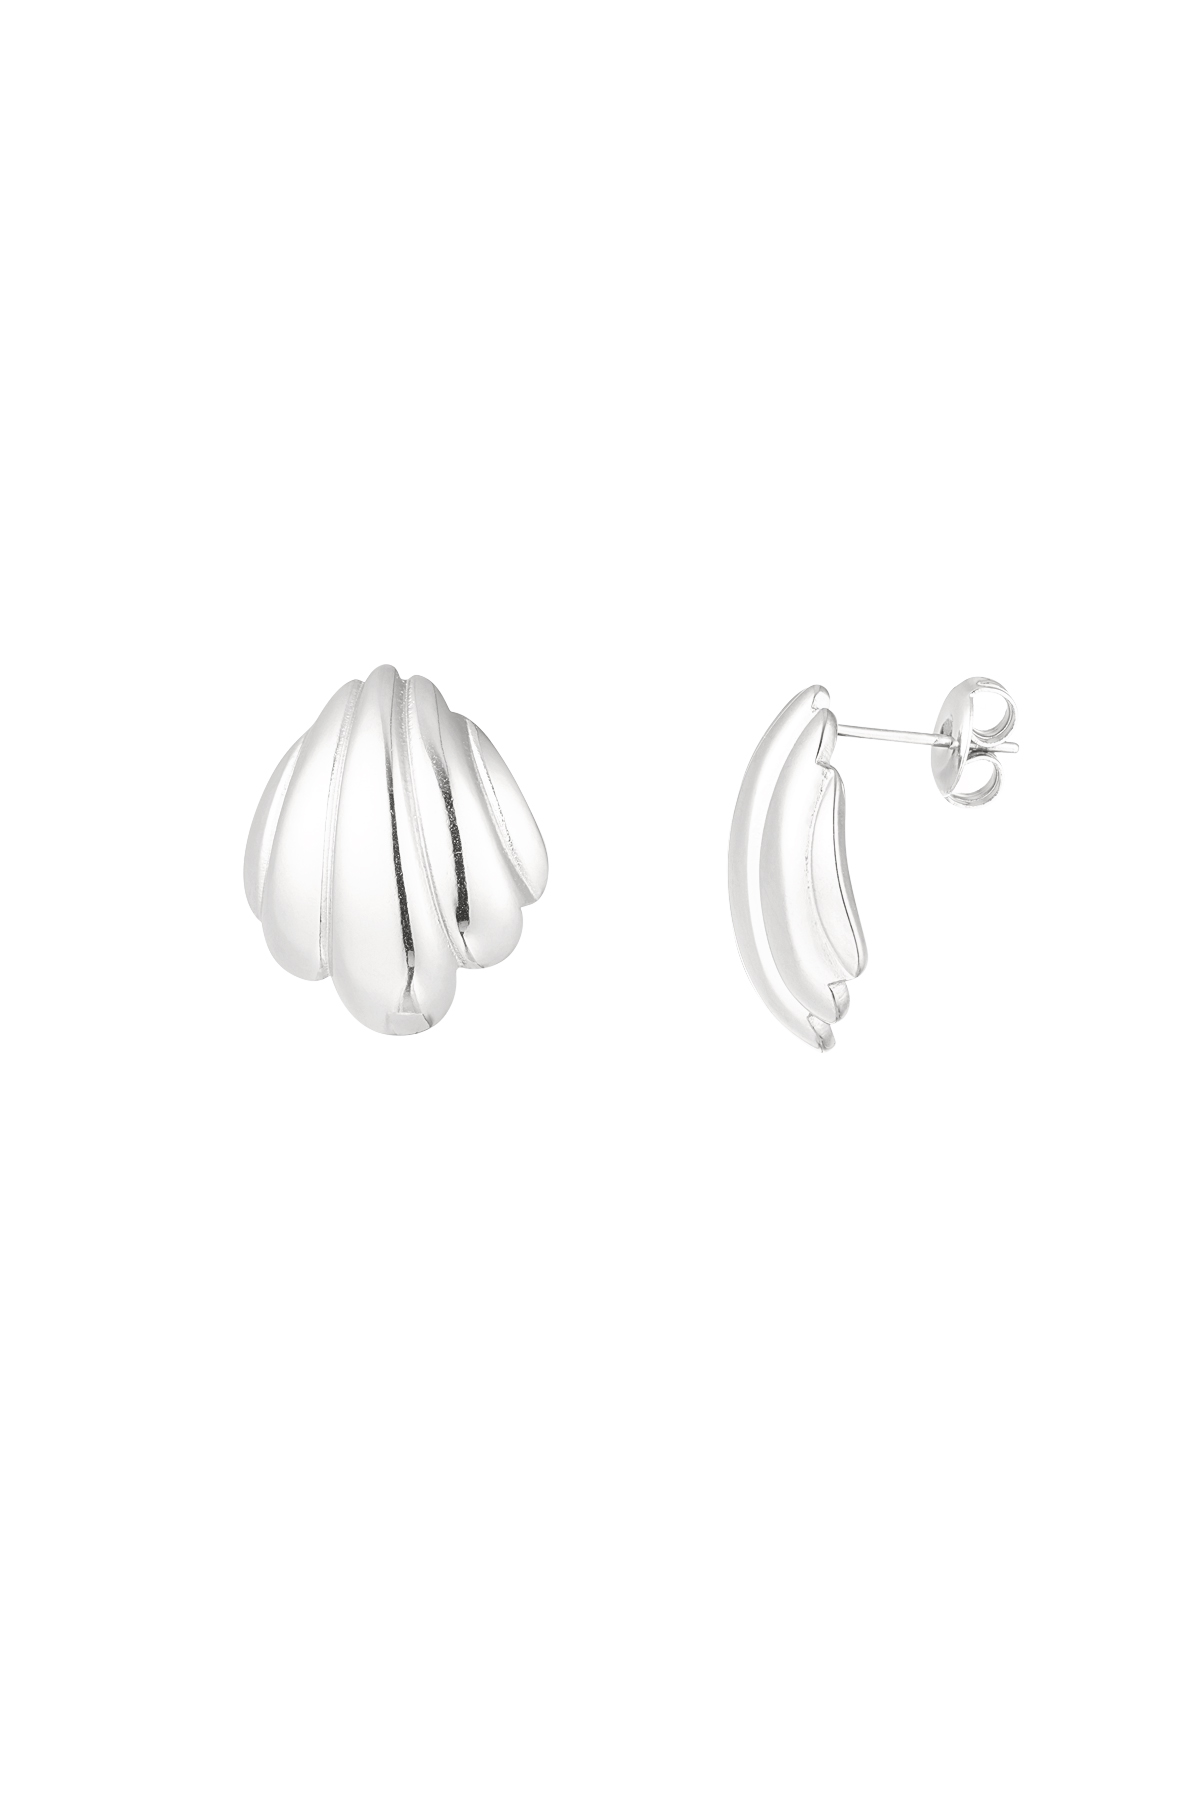 Shell earrings - silver 